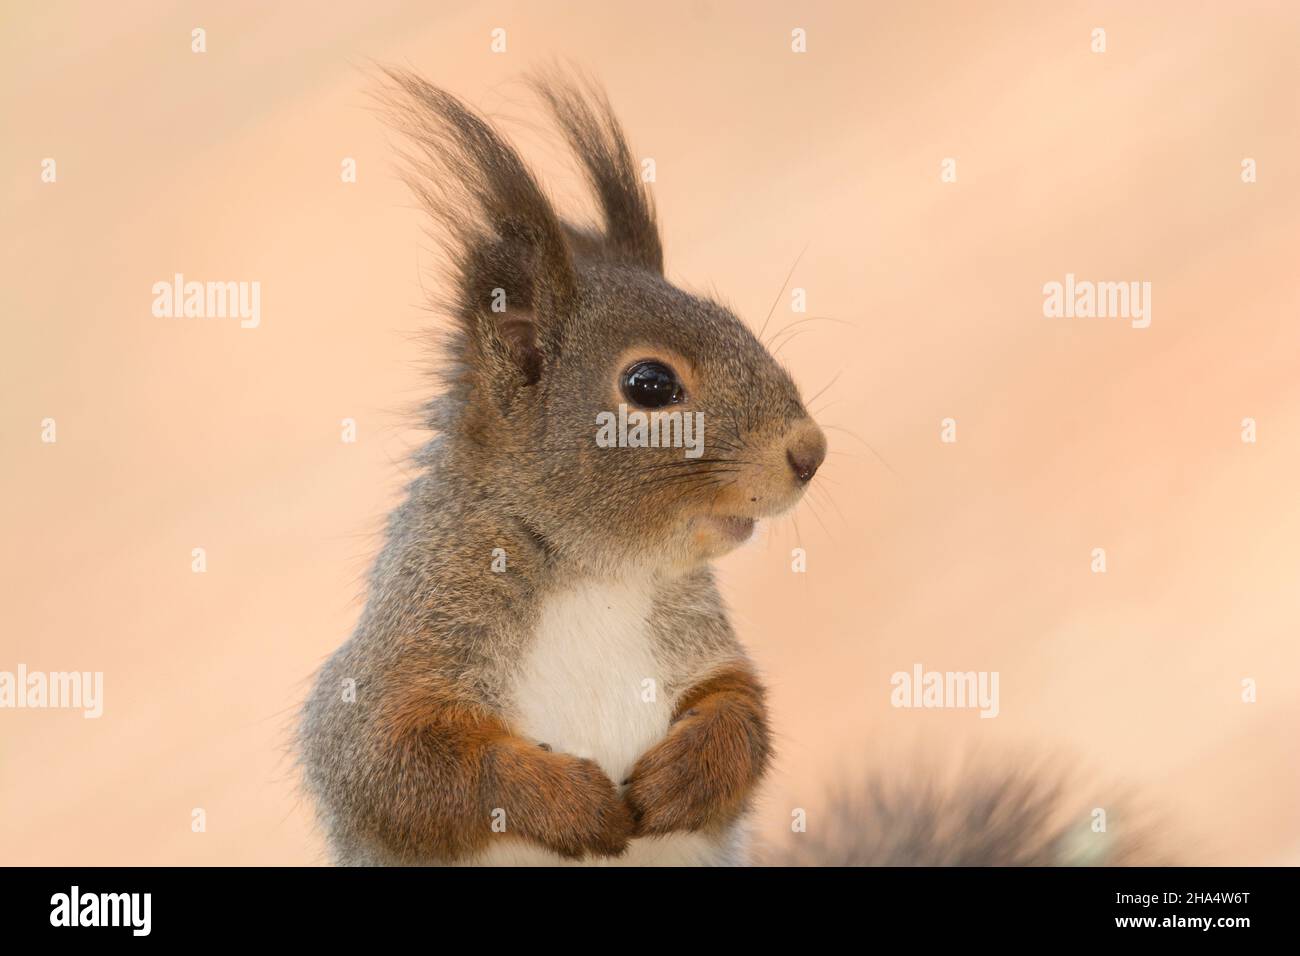 Profil und Nahaufnahme des roten Eichhörnchens Stockfoto